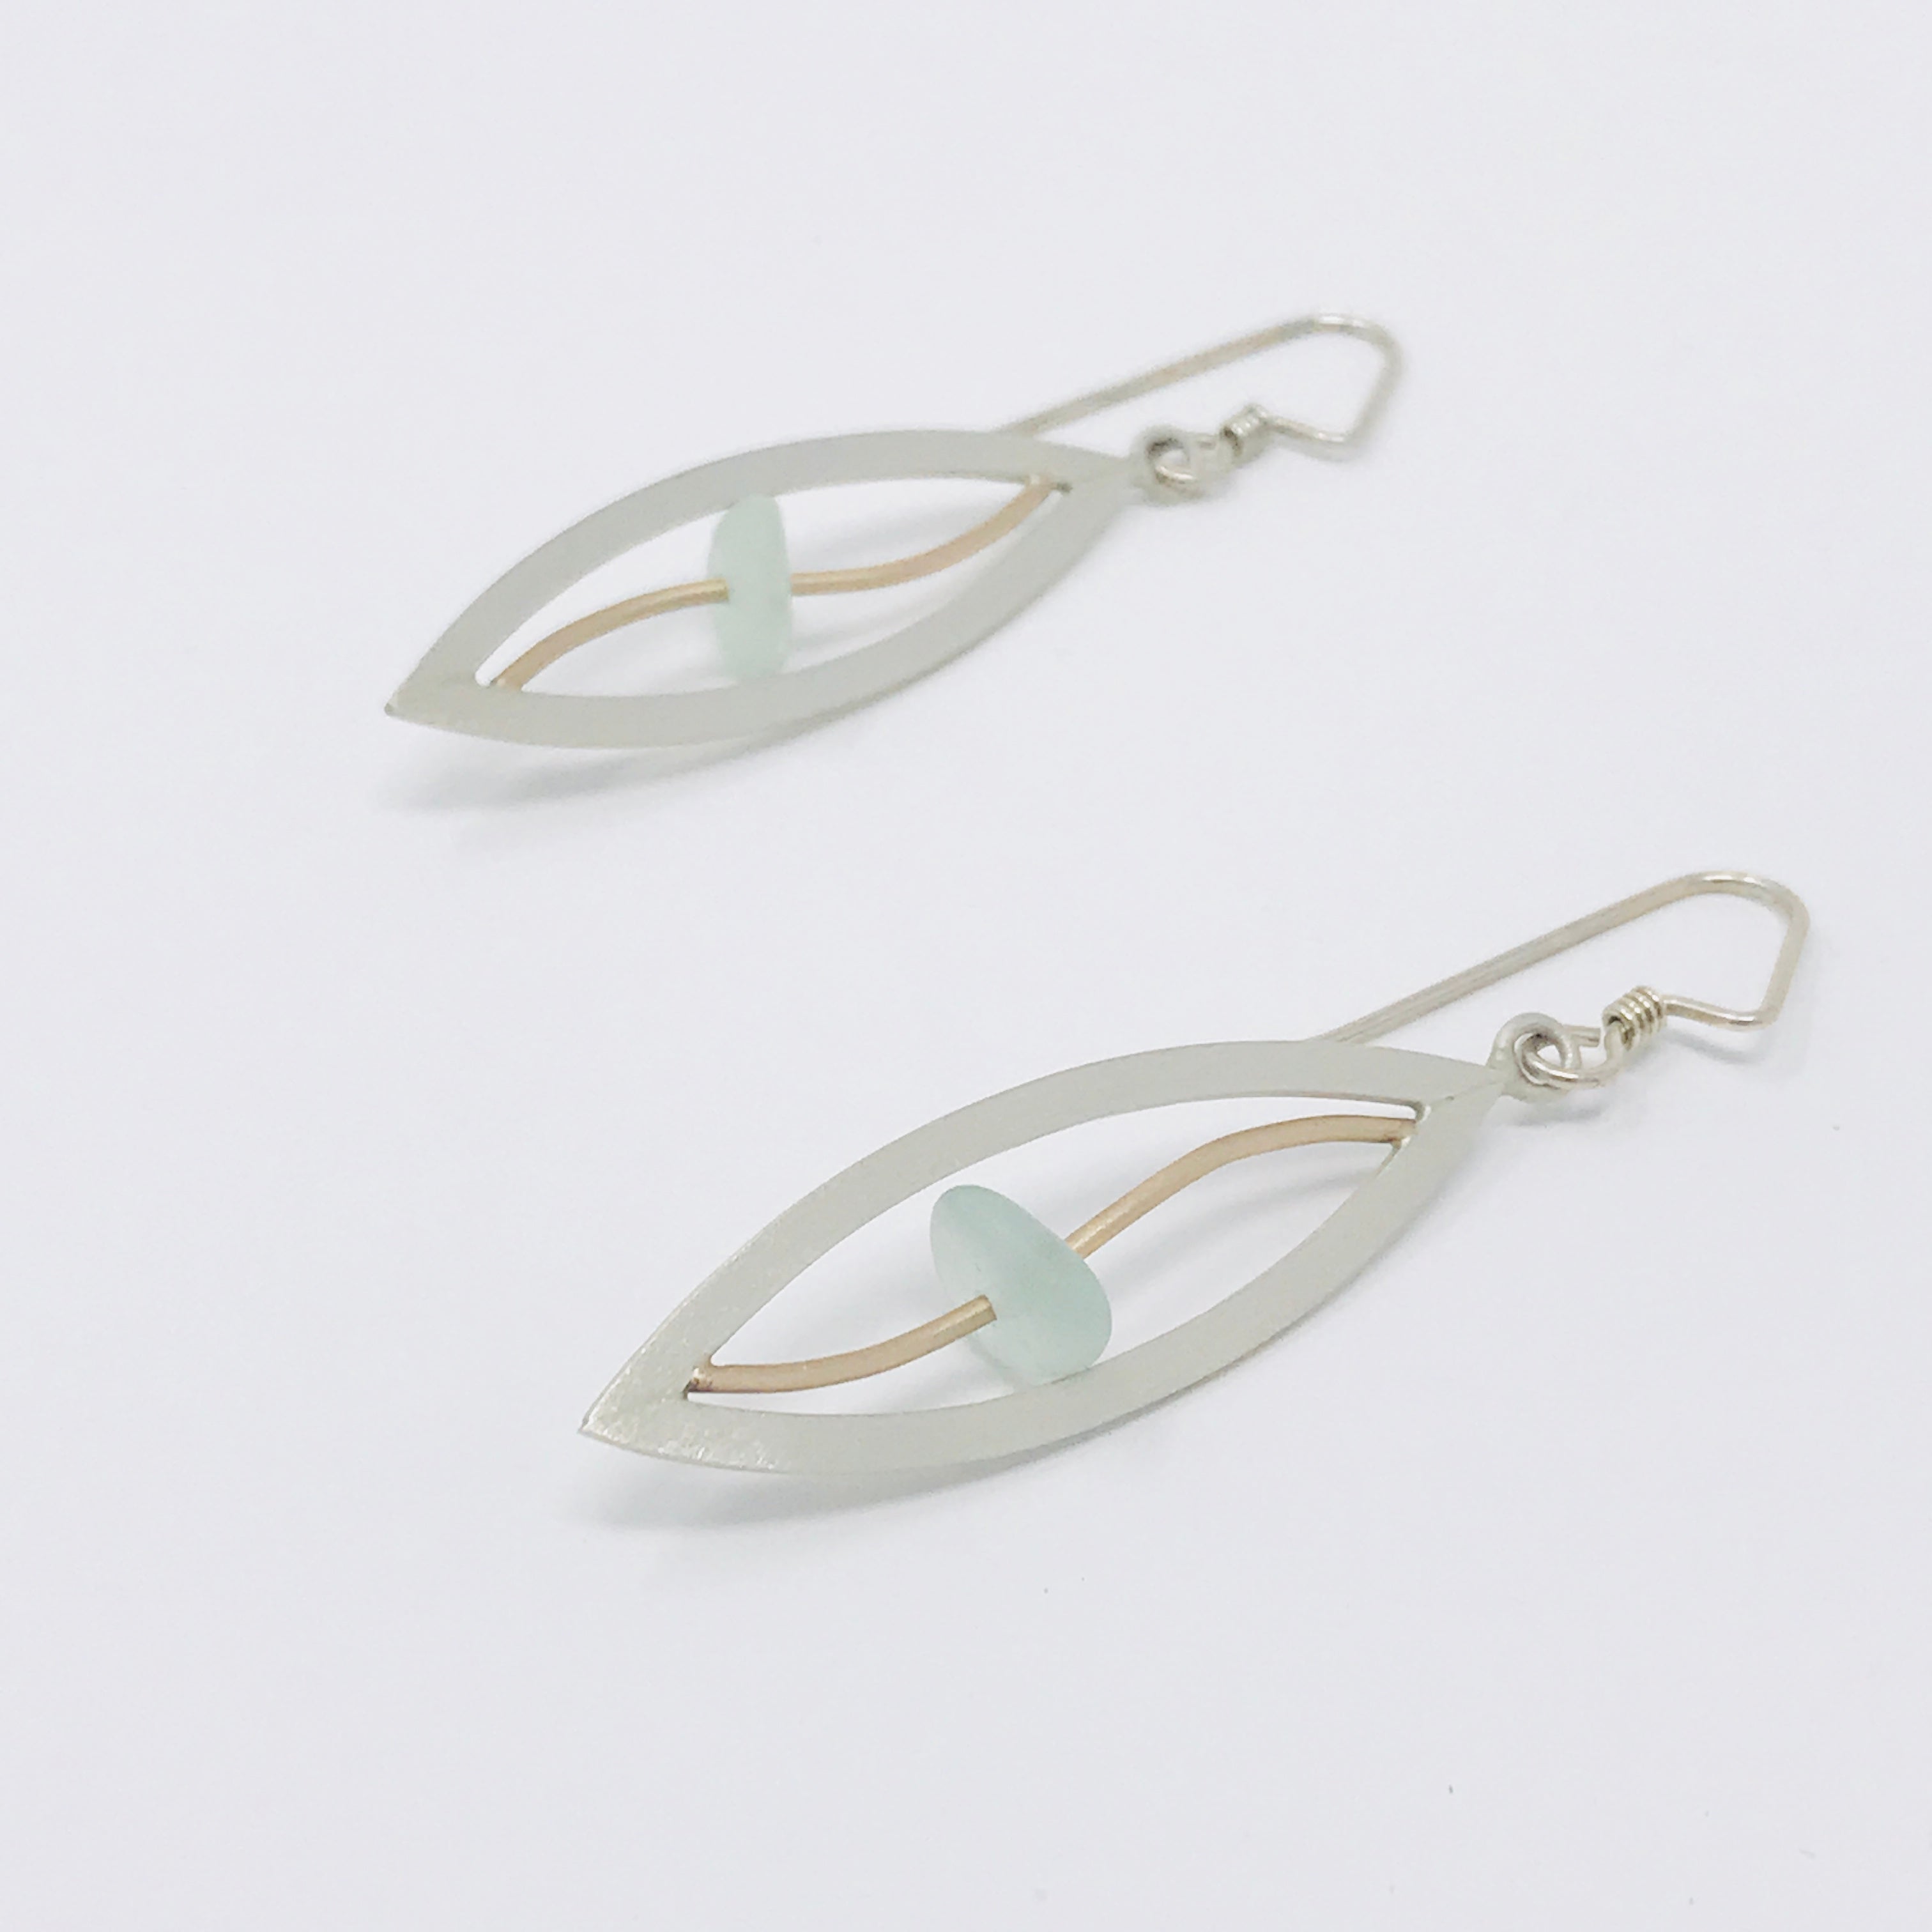 silver sea glass earrings